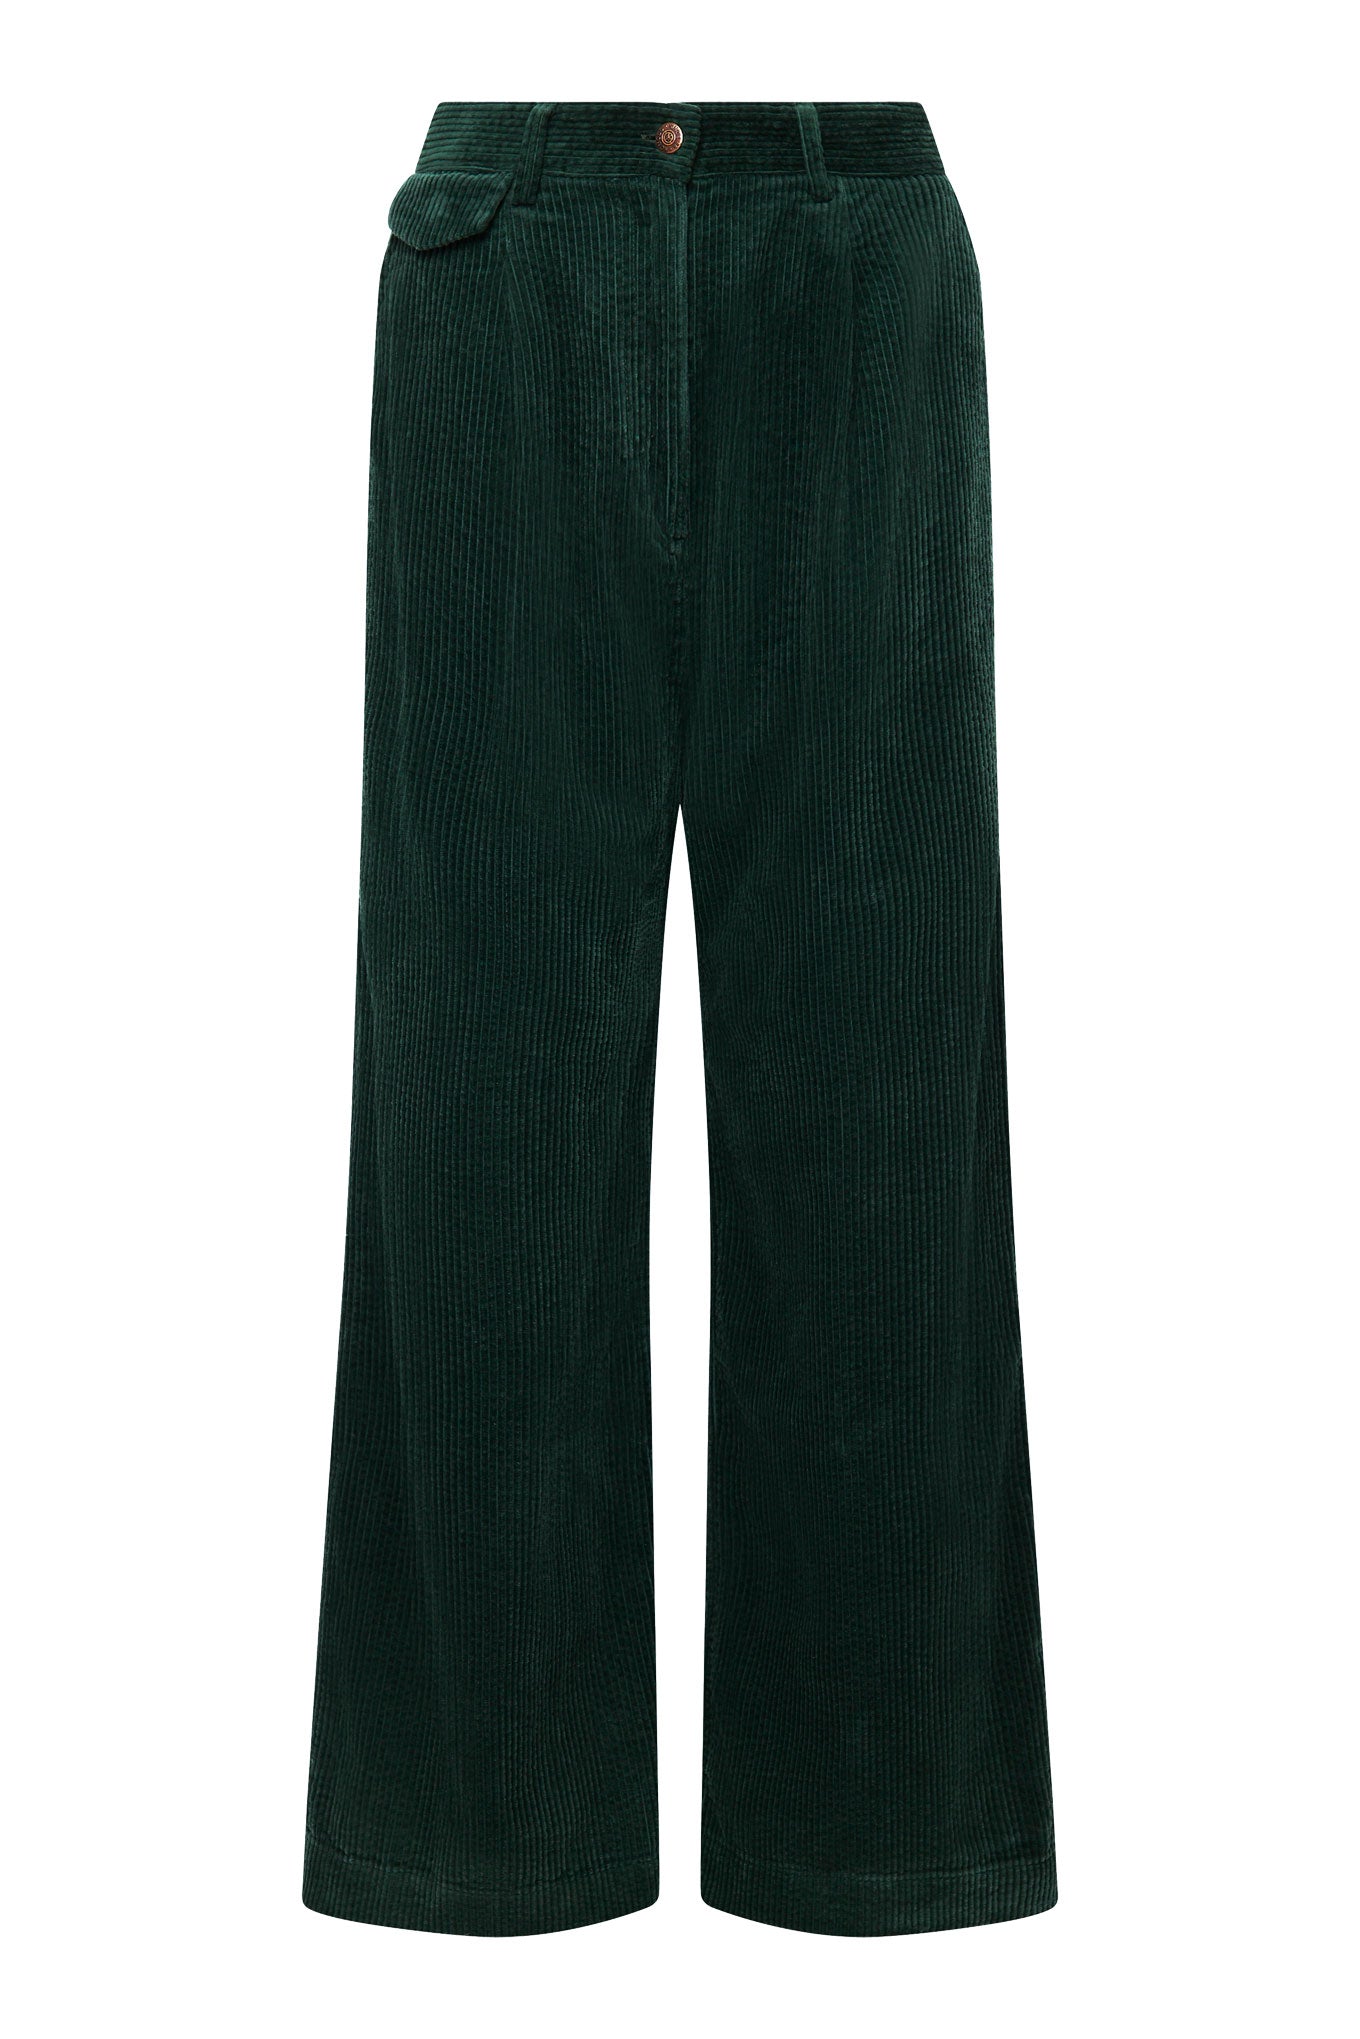 Pantalon large en velours côtelé vert foncé TIGER en coton biologique de Komodo